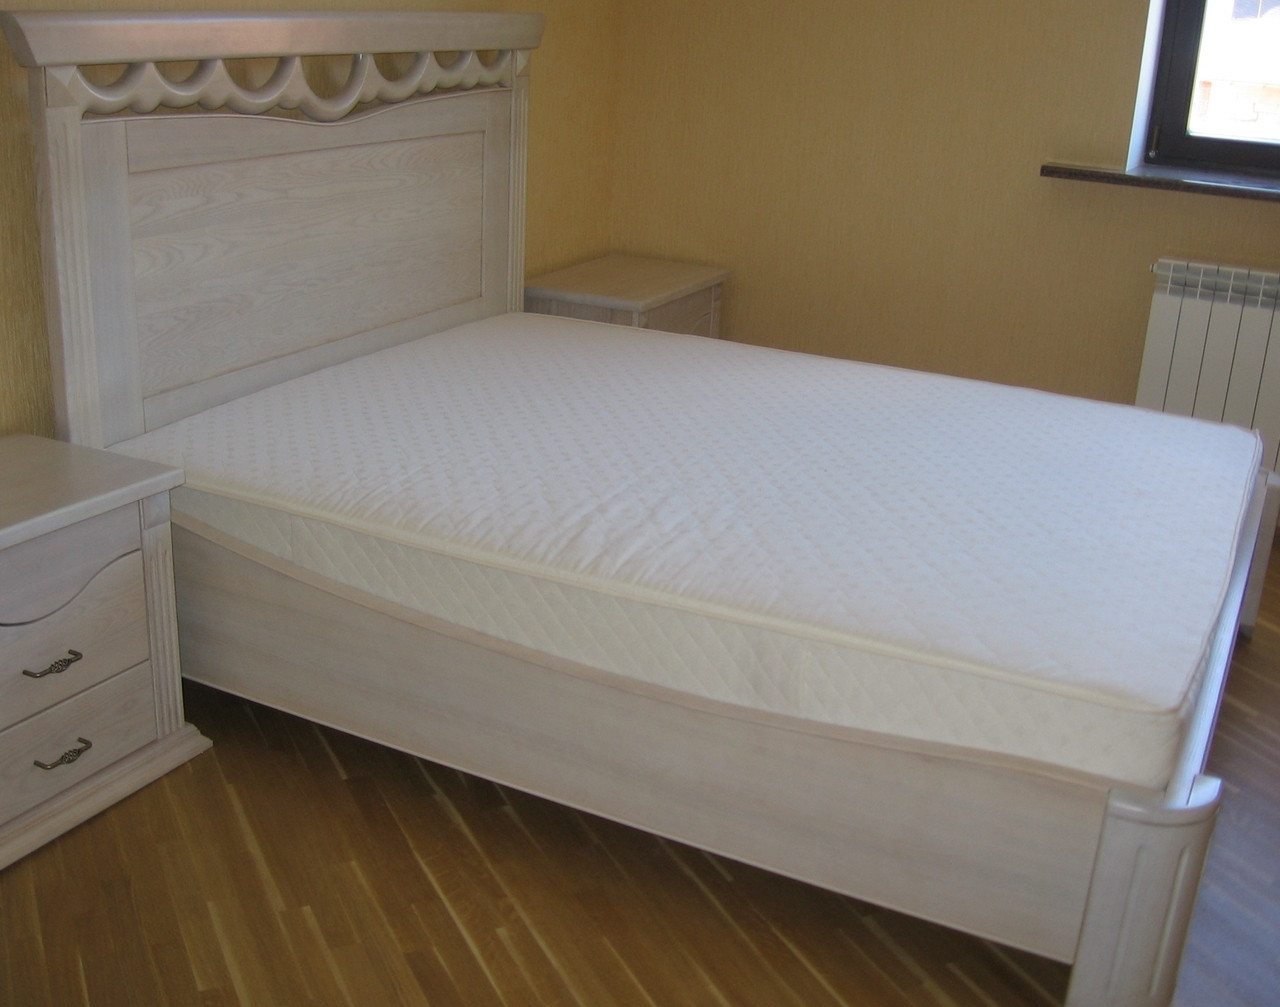 Кровать со спальным местом 2000 х 1400 мм. + 2 прикроватные тумбочки + туалетный столик